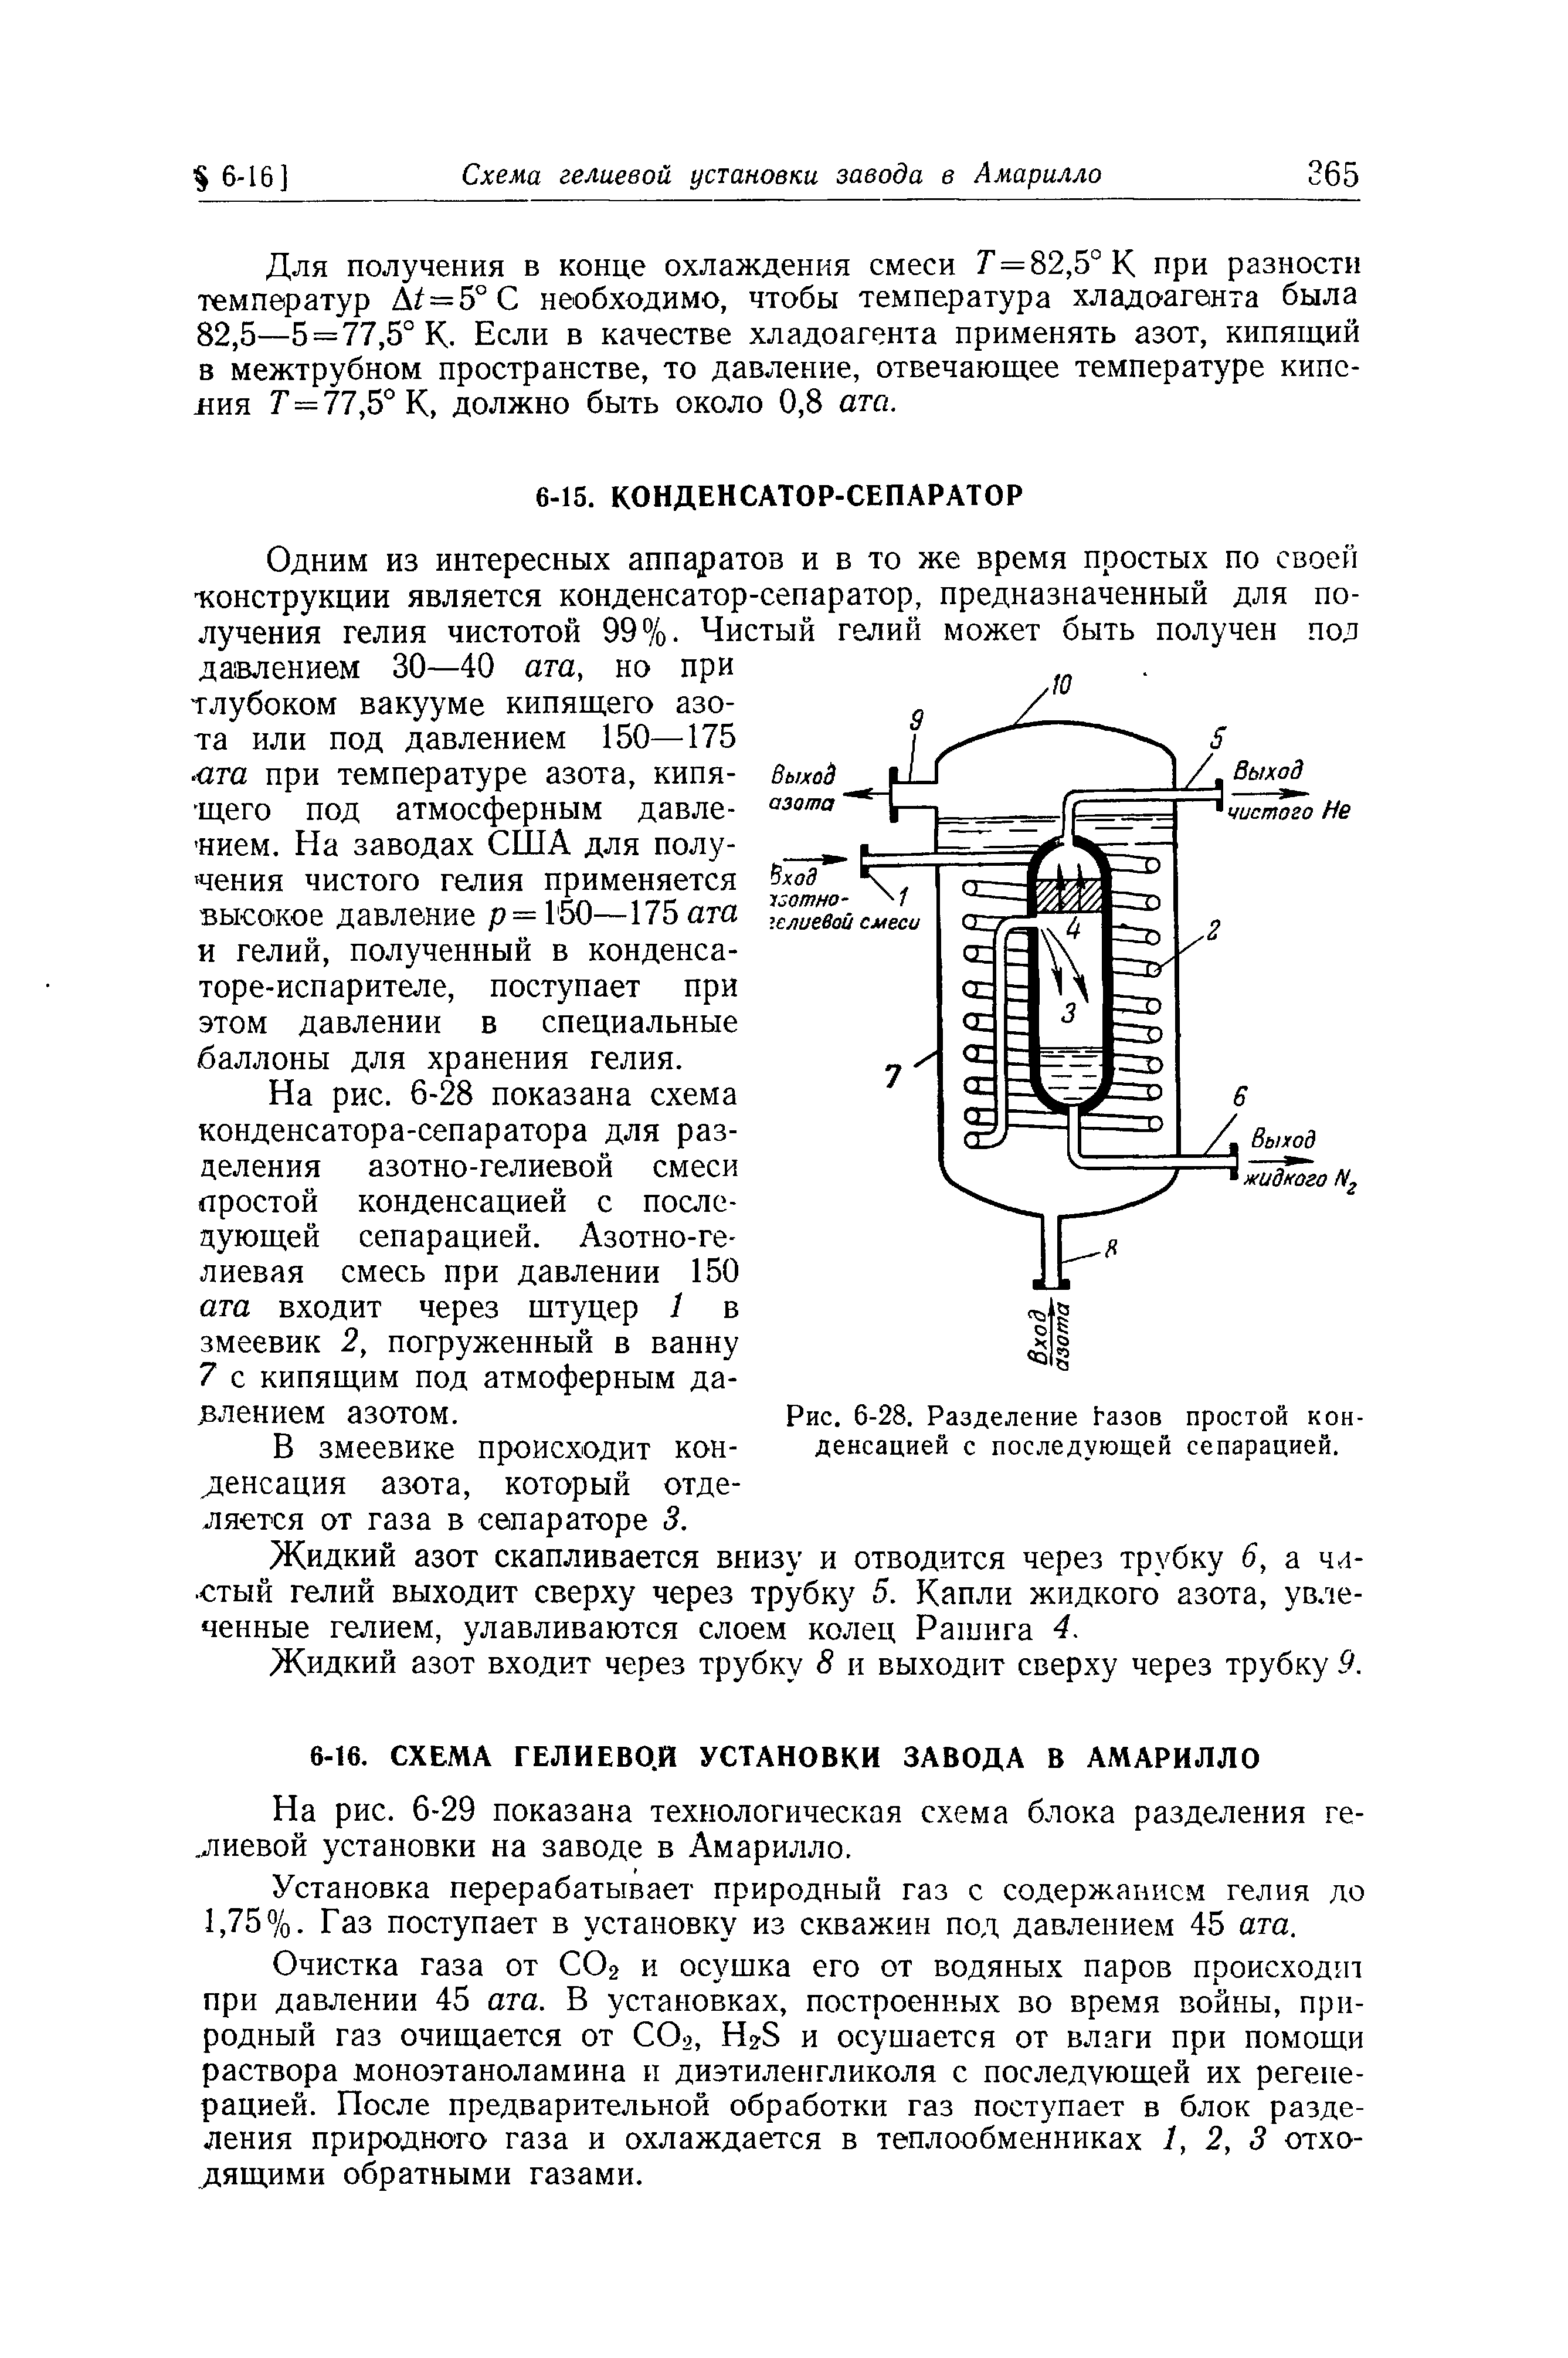 На рис. 6-28 показана схема конденсатора-сепаратора для разделения азотно-гелиевой смеси простой конденсацией с последующей сепарацией. Азотно-ге-лиевая смесь при давлении 150 ата входит через штуцер 1 в змеевик 2, погруженный в ванну 7 с кипящим под атмоферным да-Jвлeниeм азотом.